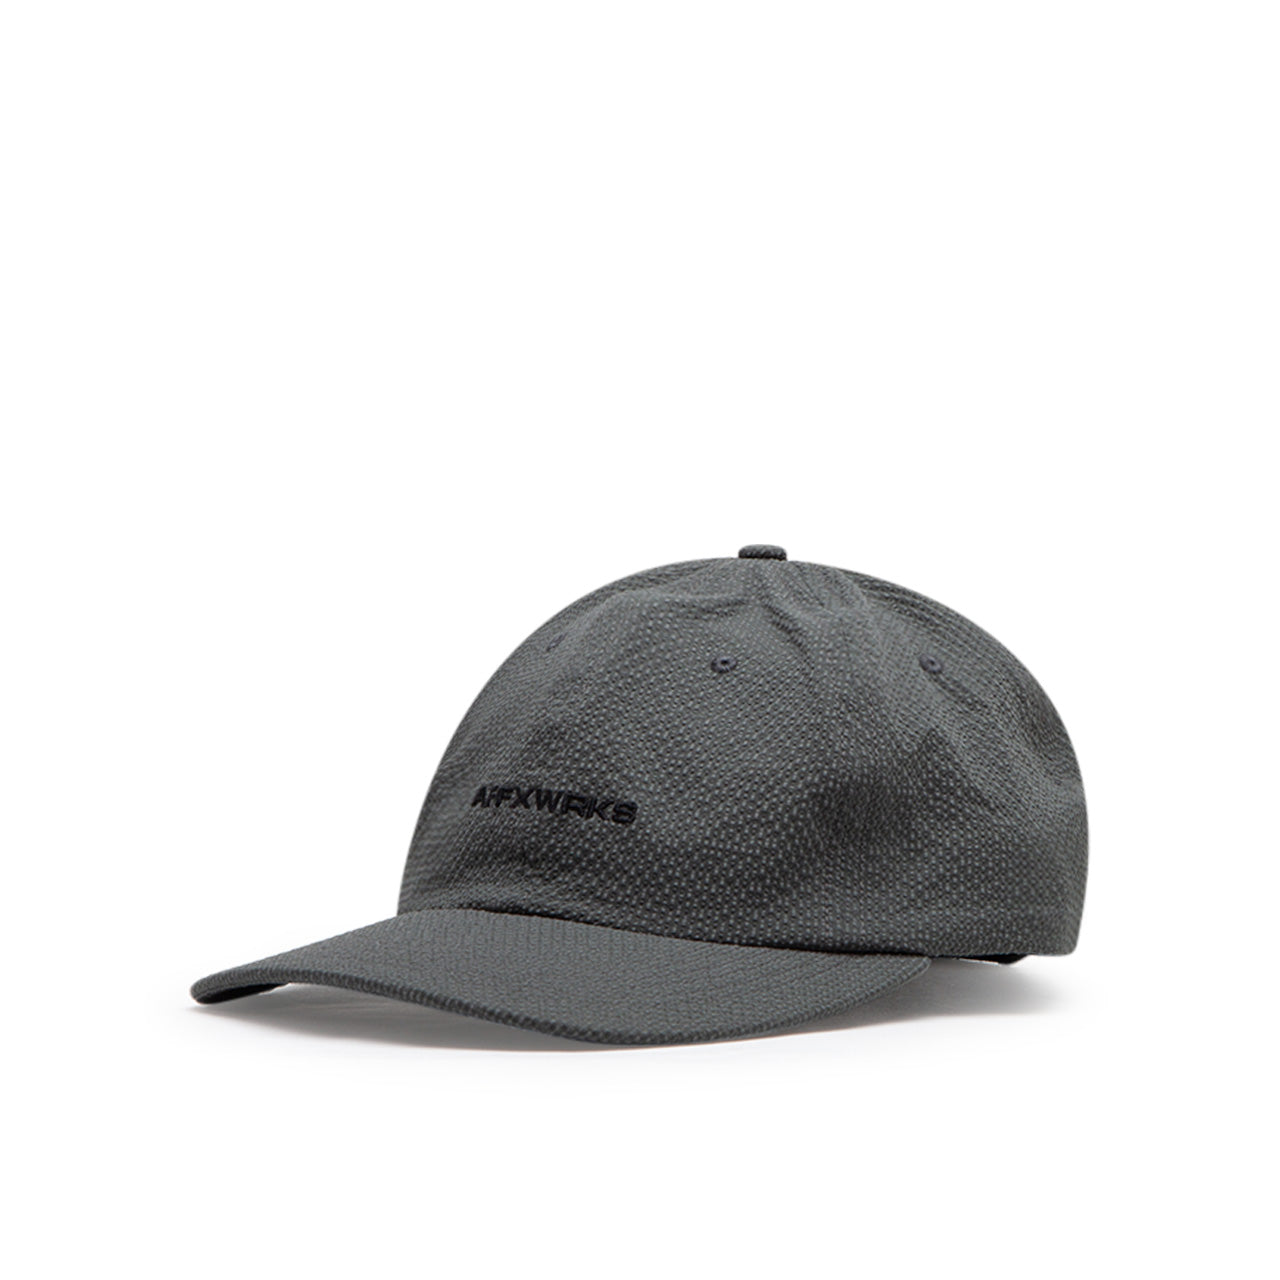 affxwrks cap (grey seersucker)